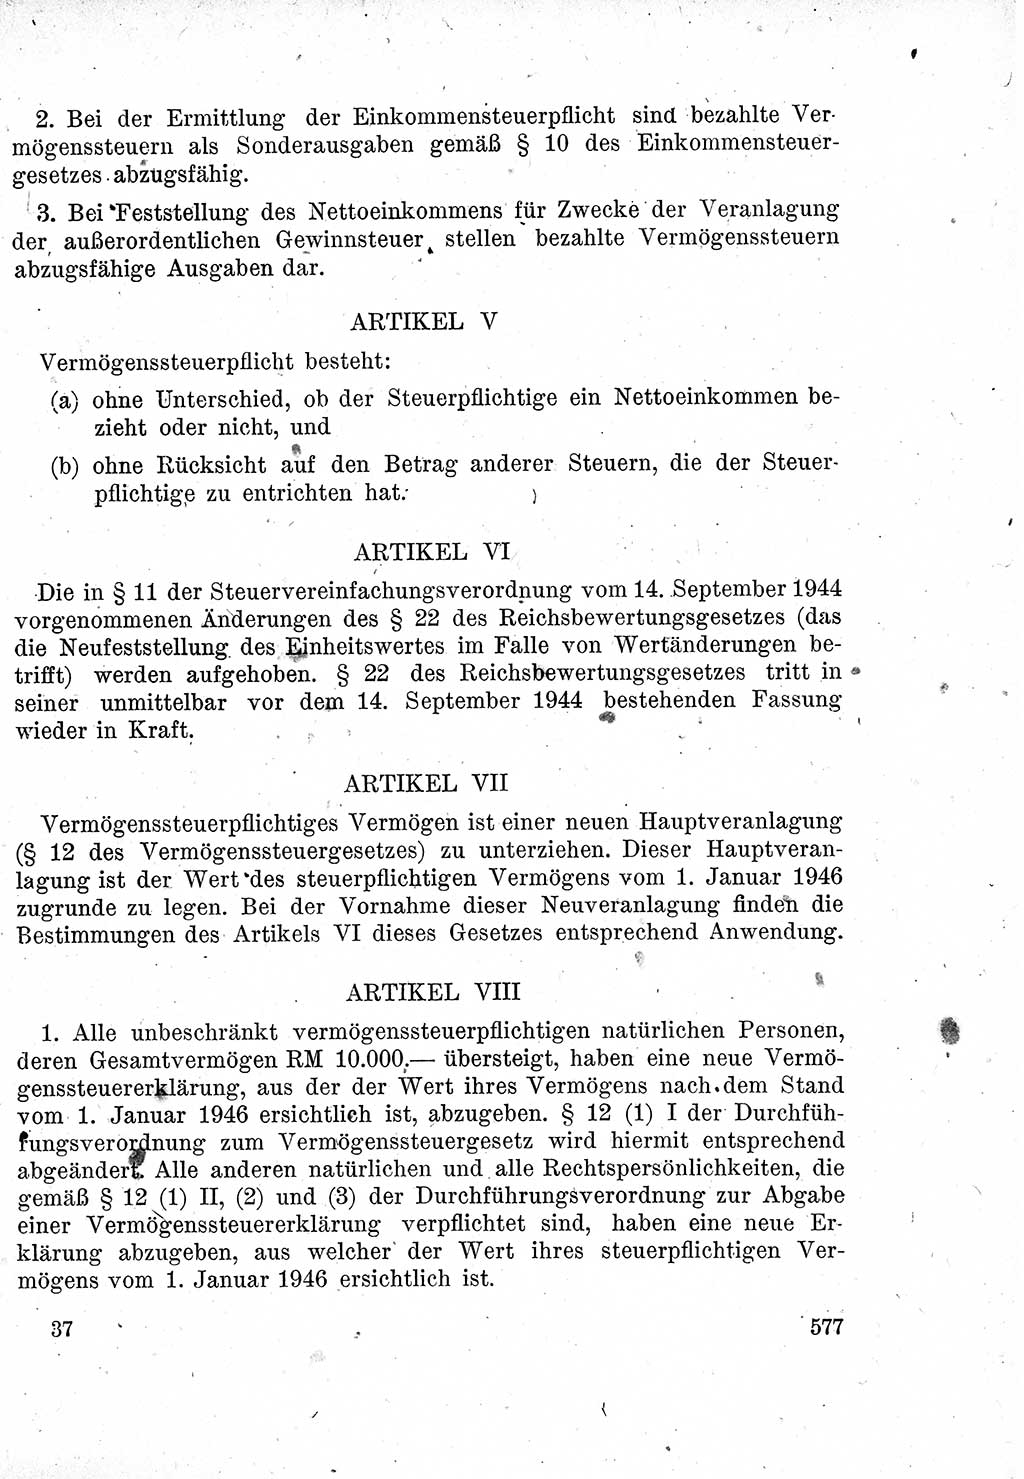 Das Recht der Besatzungsmacht (Deutschland), Proklamationen, Deklerationen, Verordnungen, Gesetze und Bekanntmachungen 1947, Seite 577 (R. Bes. Dtl. 1947, S. 577)